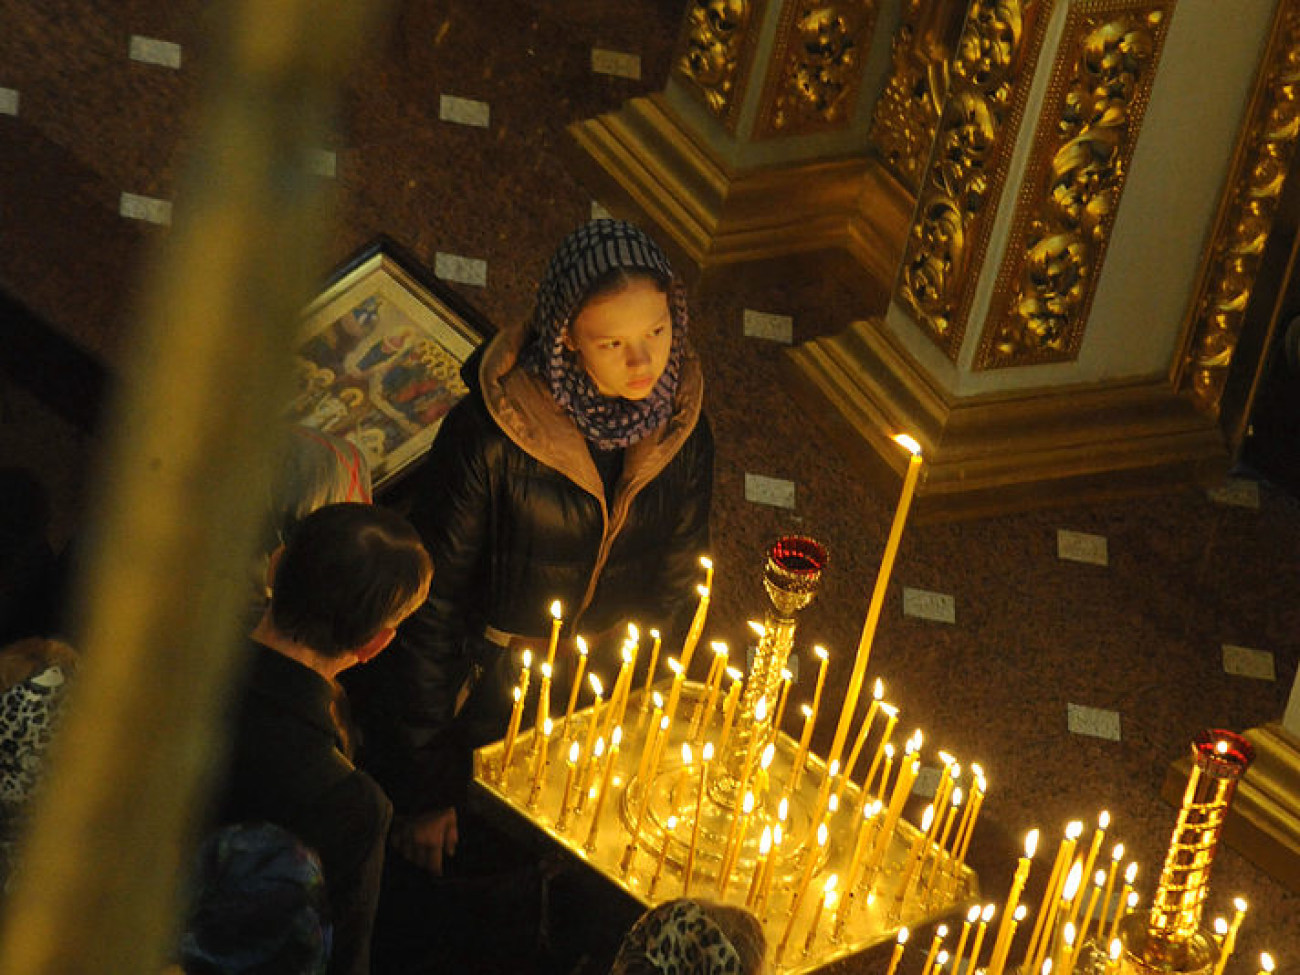 Православные отмечают Покров Пресвятой Богородицы